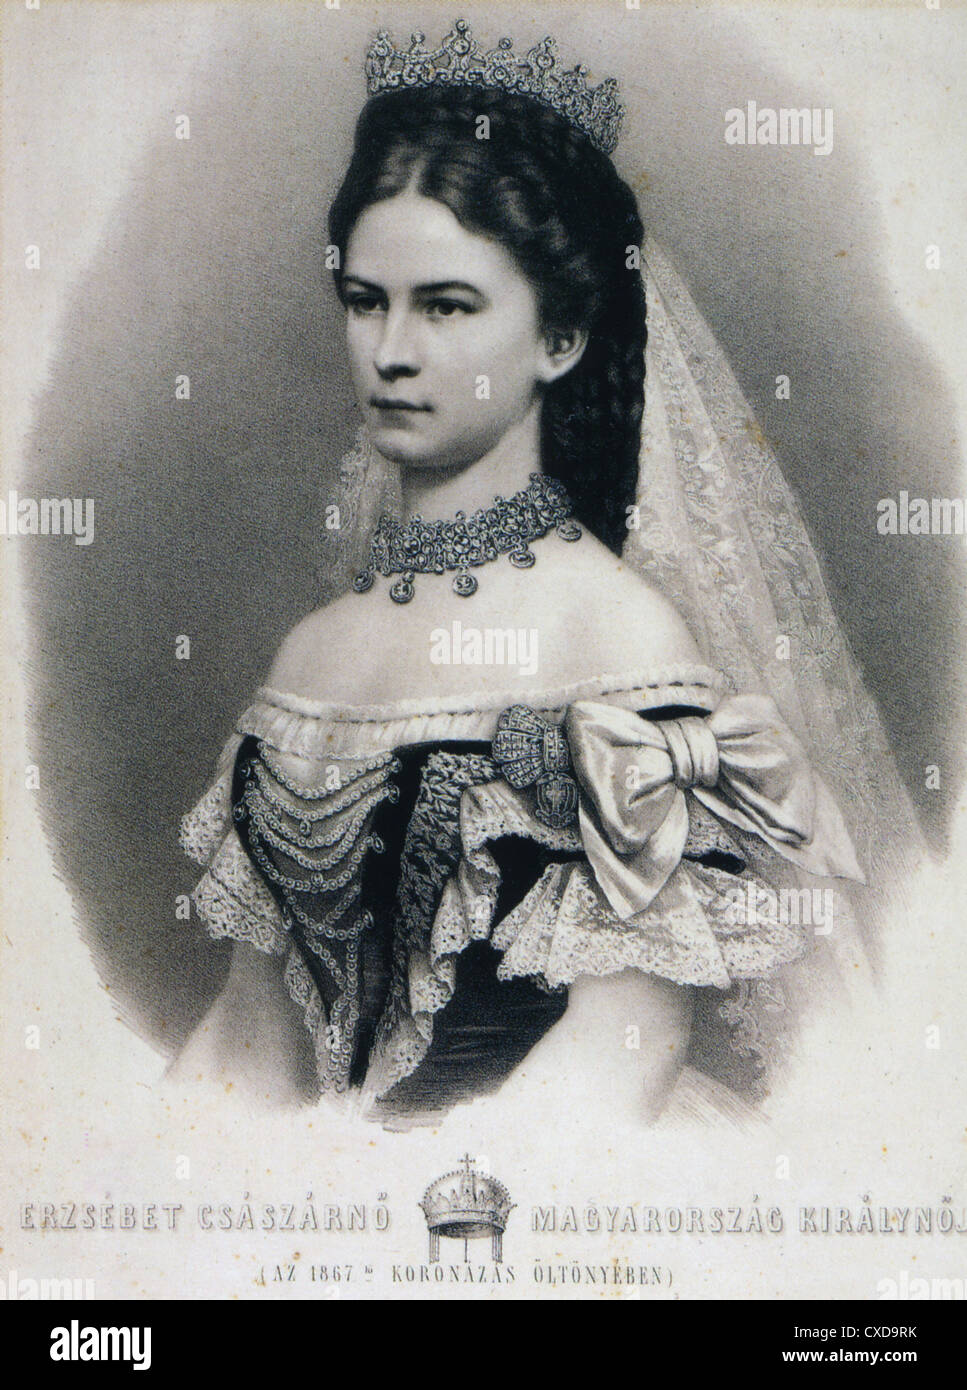 SISSI Y FRANCISCO JOSÉ La-emperatriz-elisabeth-de-austria-1837-1898-tambien-reina-de-hungria-cxd9rk